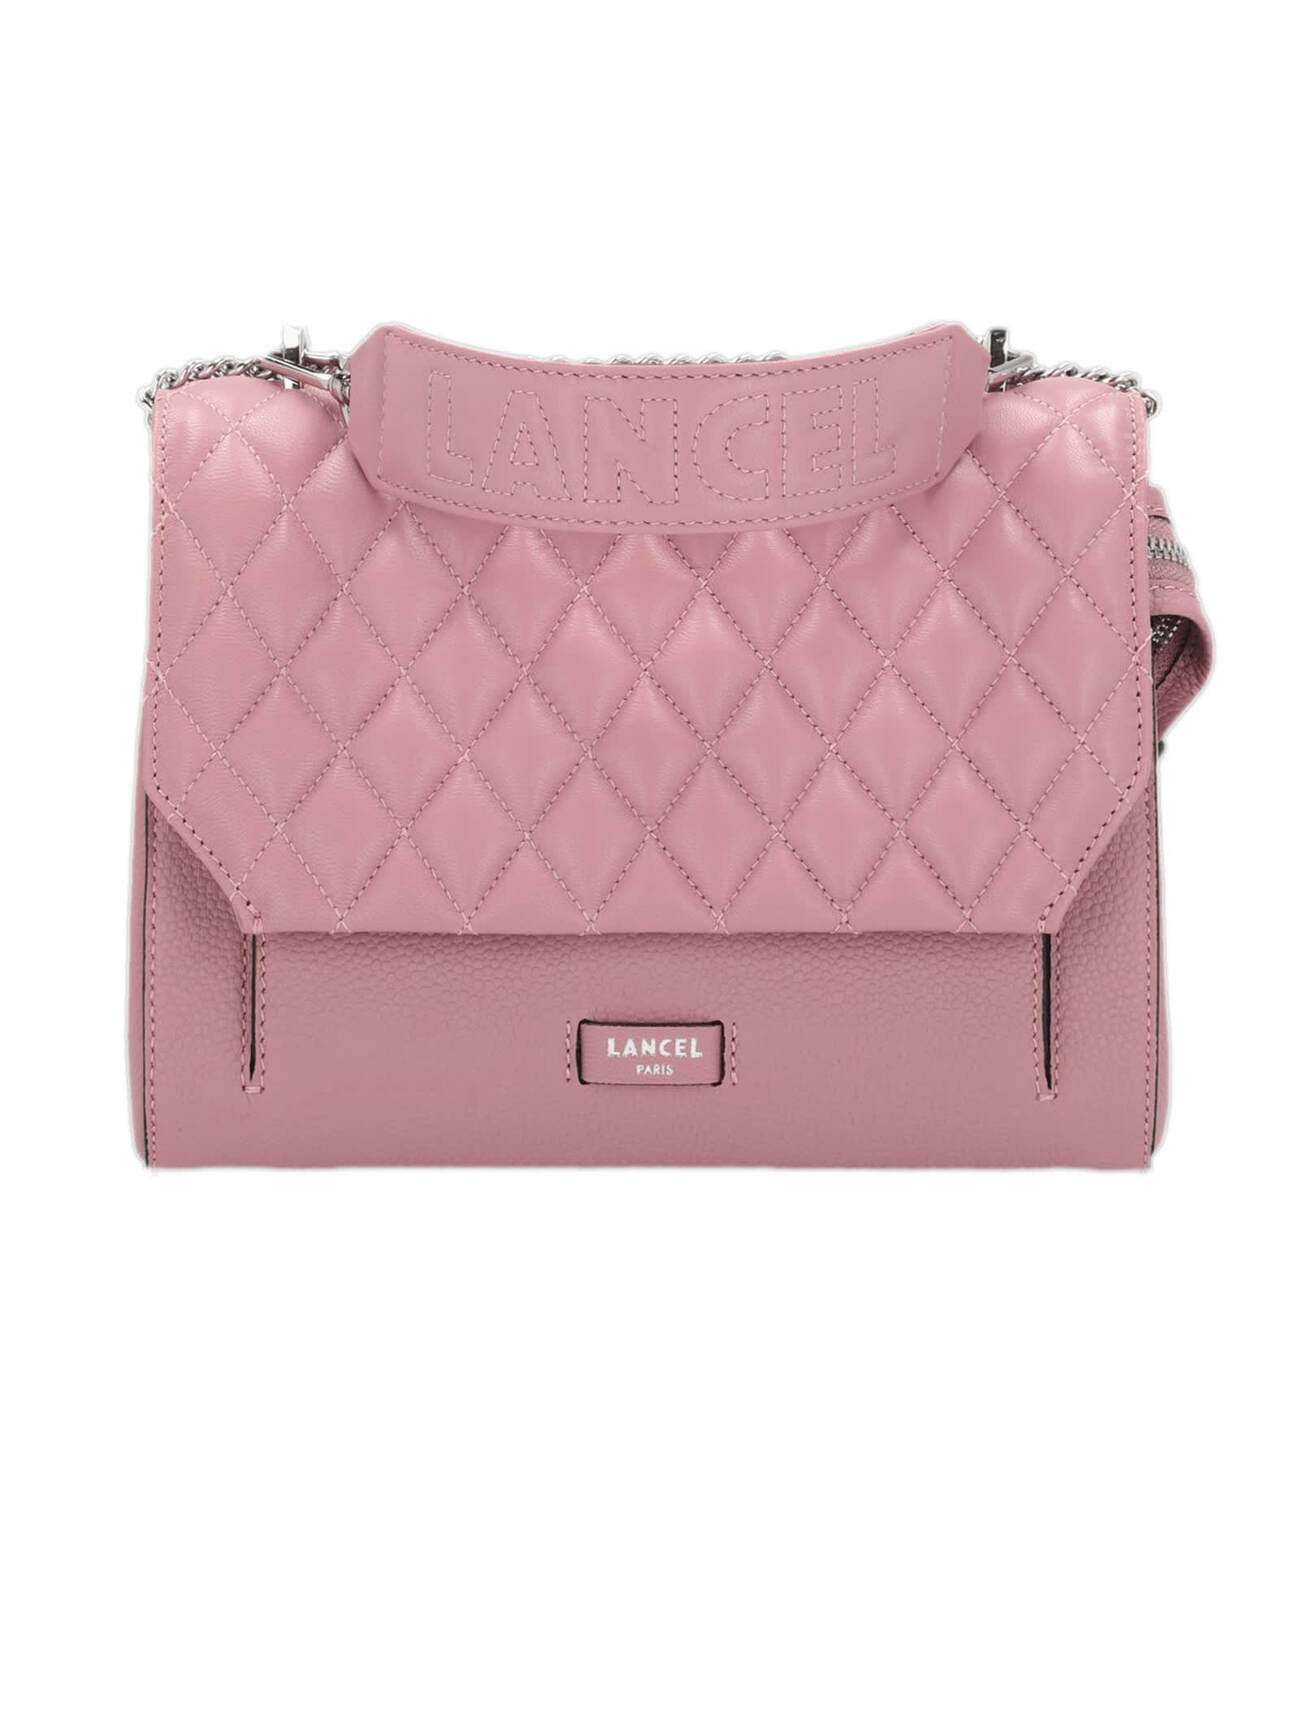 Lancel Pink Leather Shoulder Bag